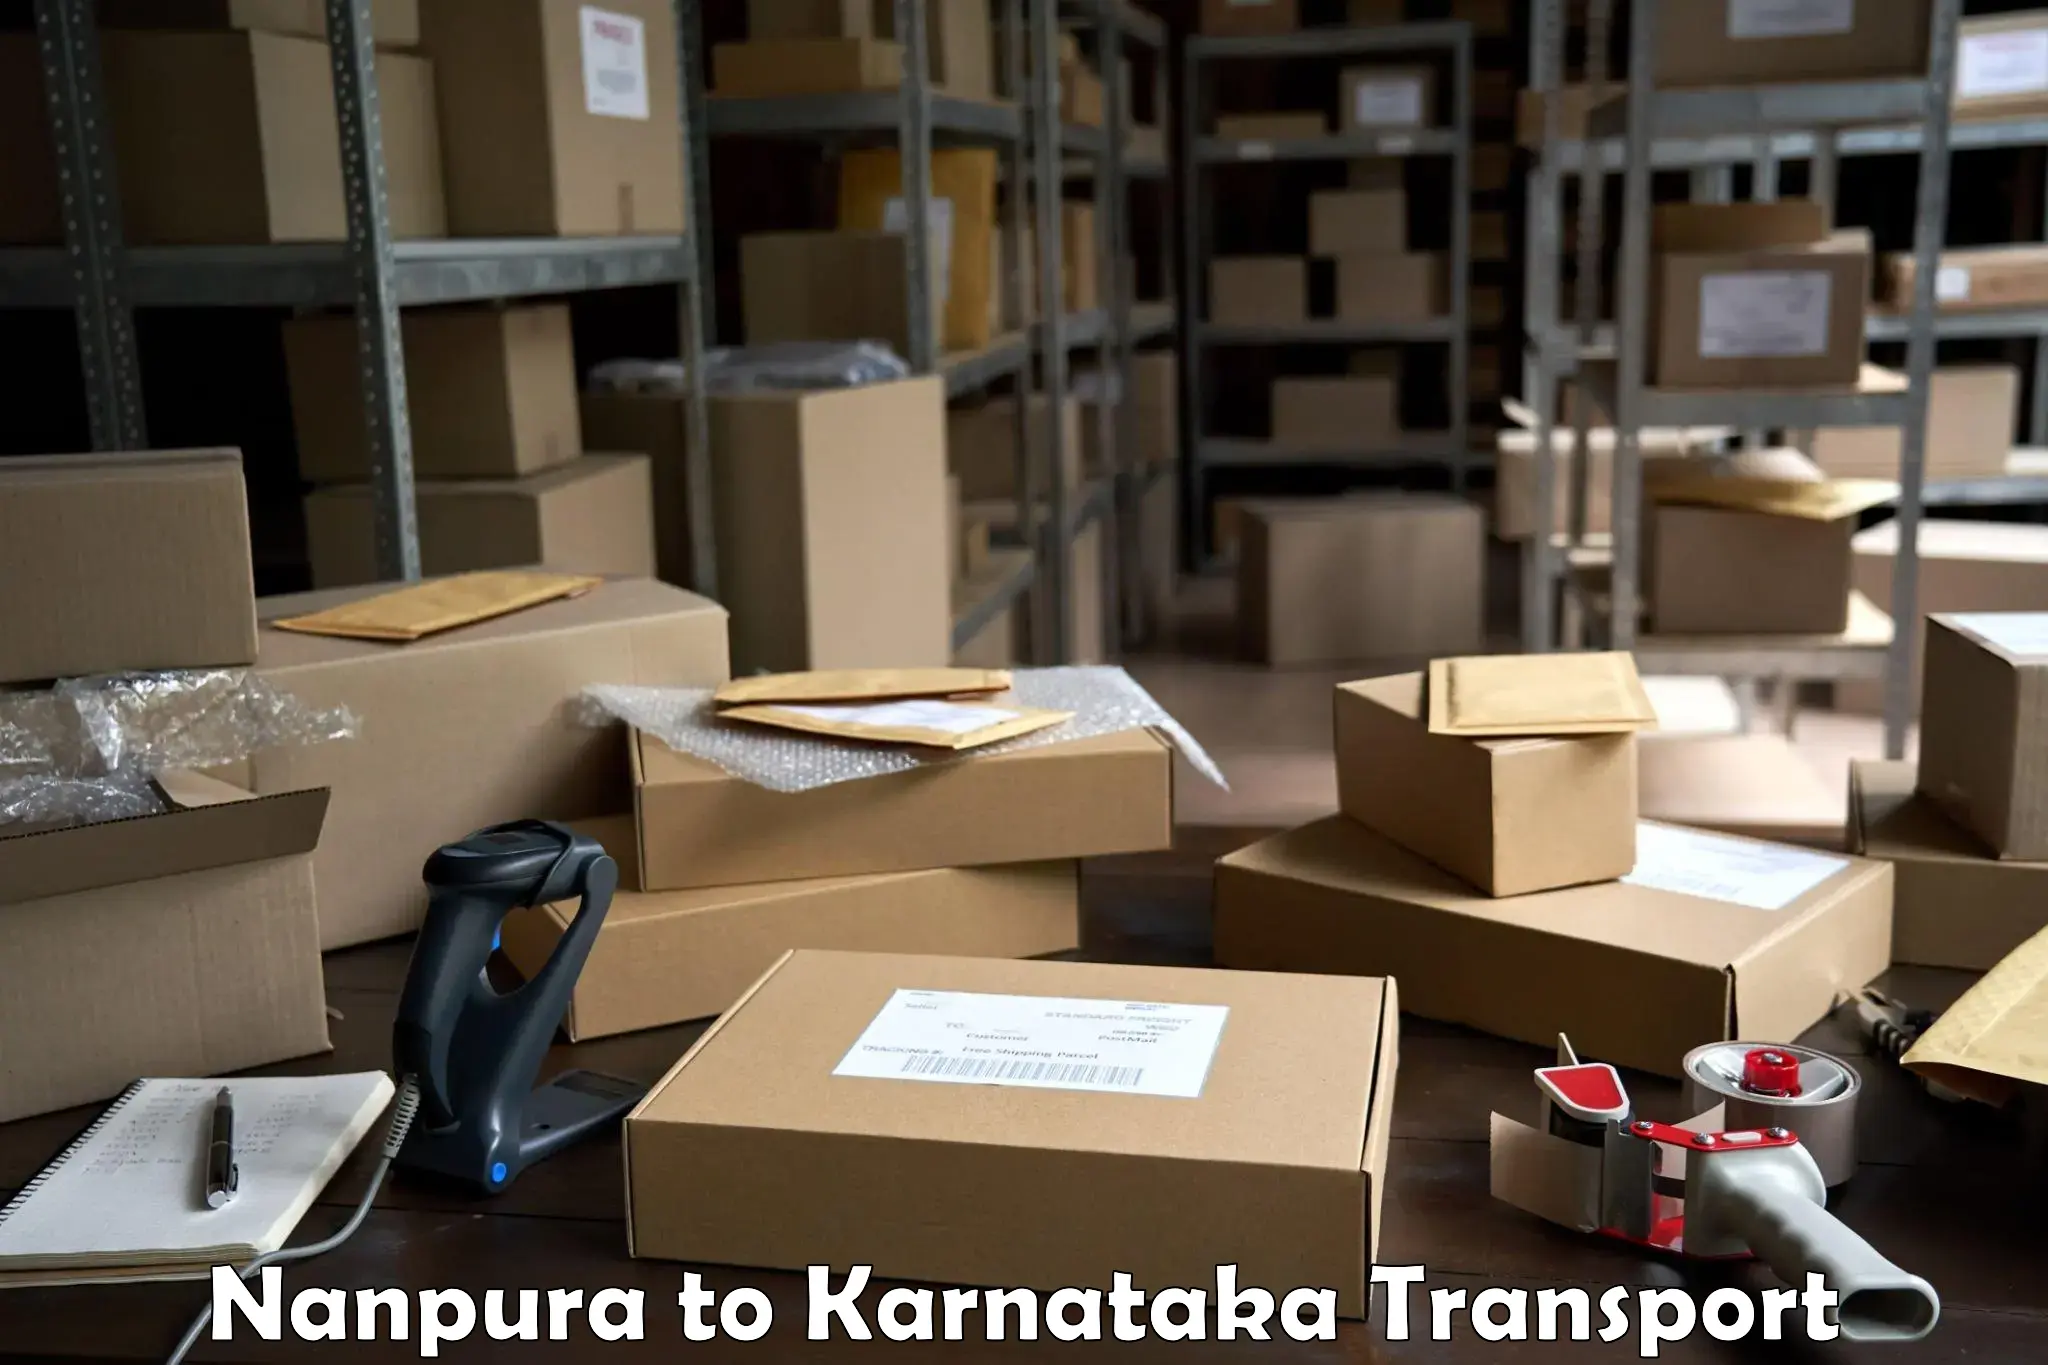 Bike shipping service Nanpura to Bangalore